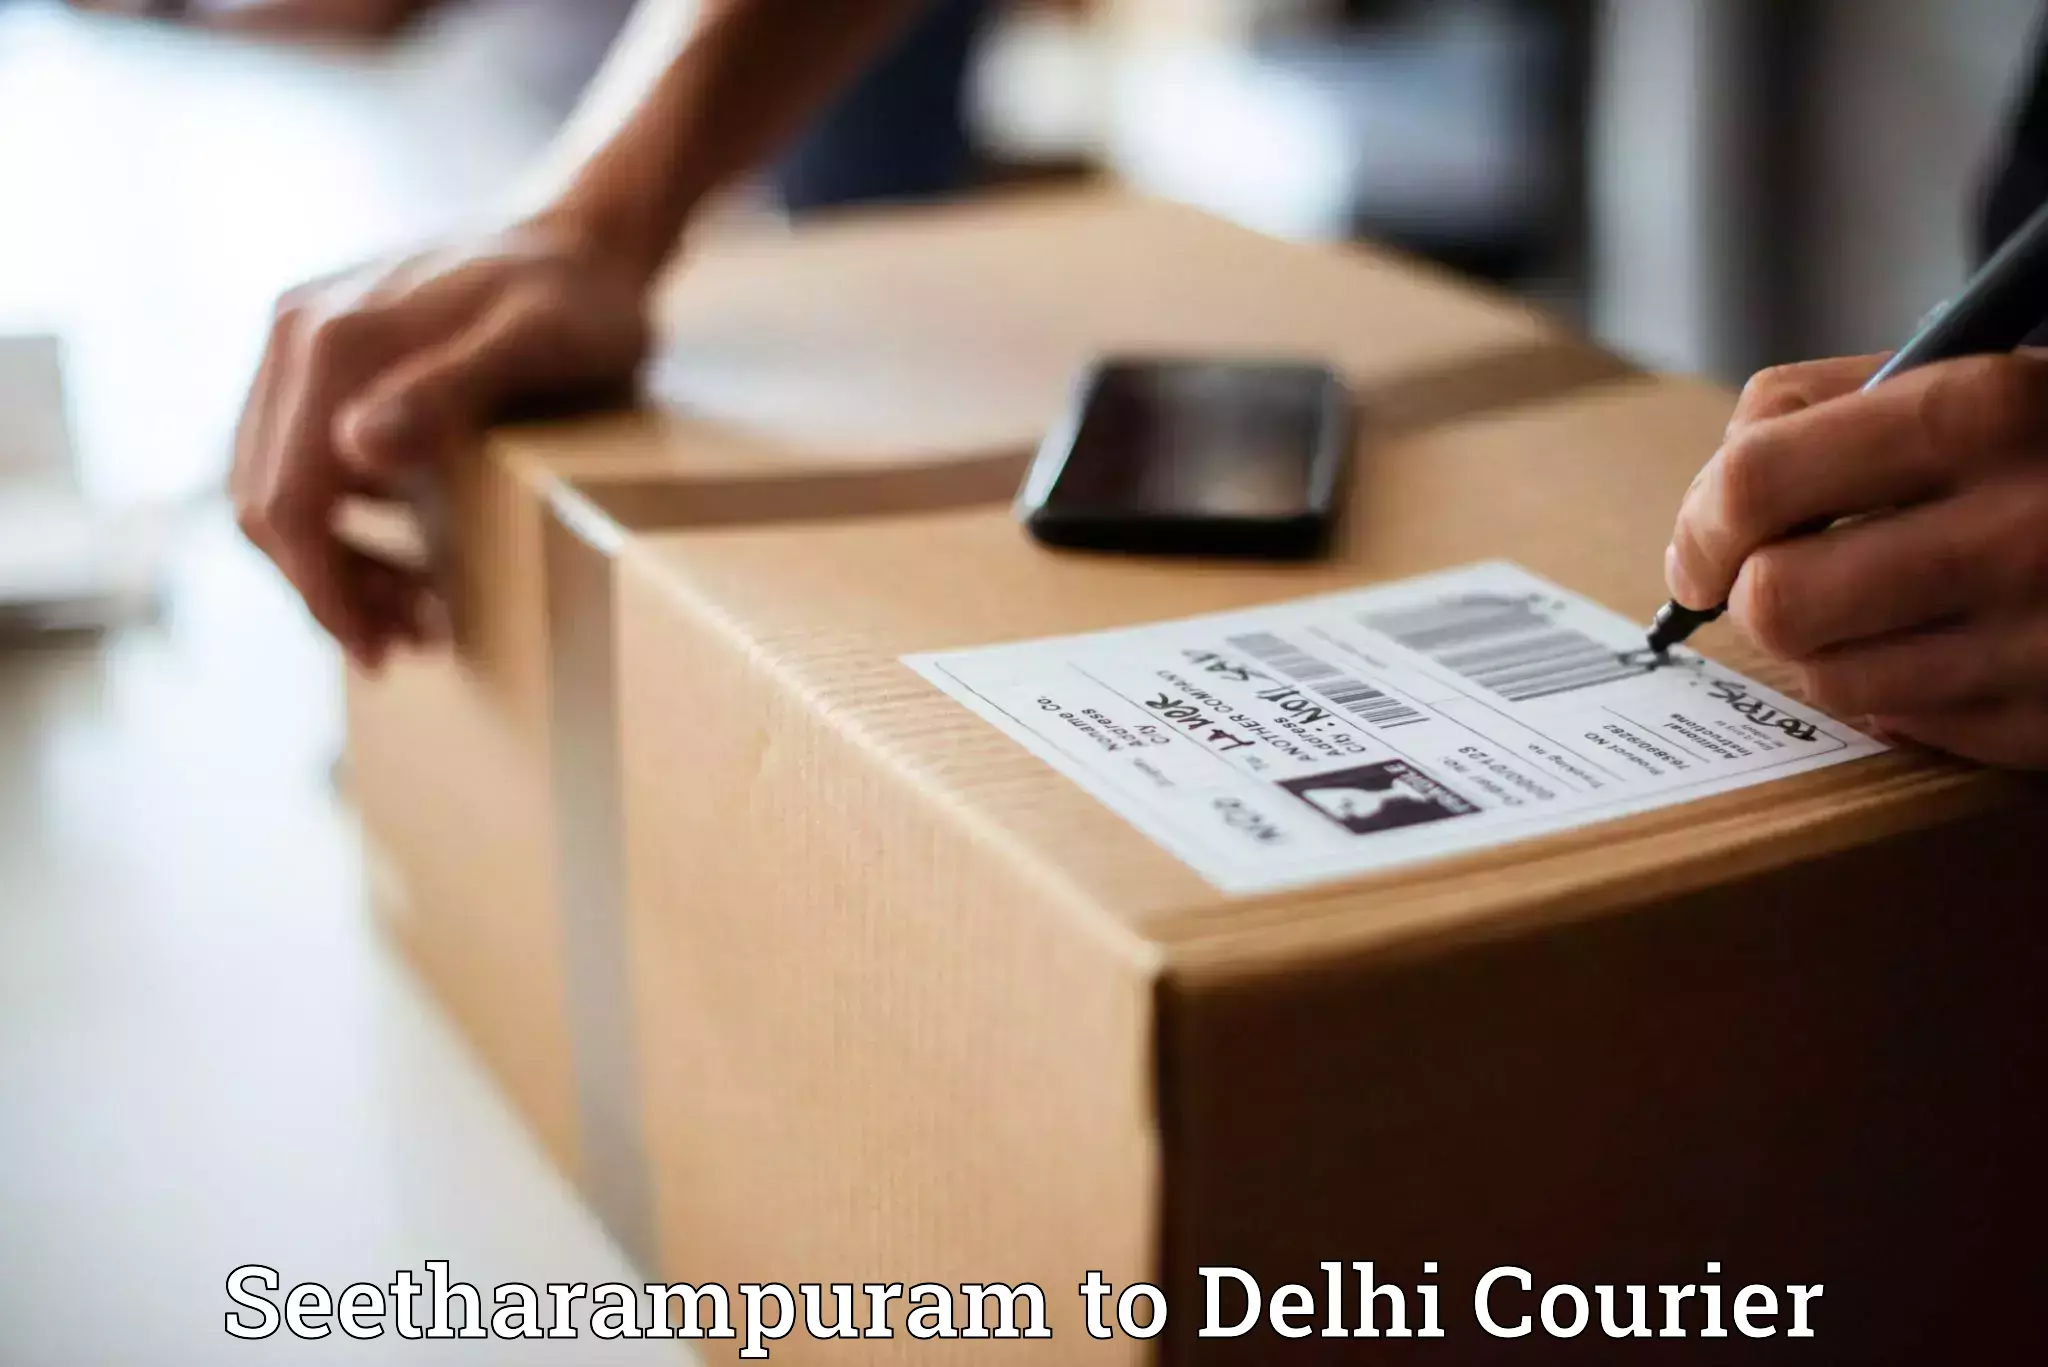 Regular parcel service Seetharampuram to Delhi